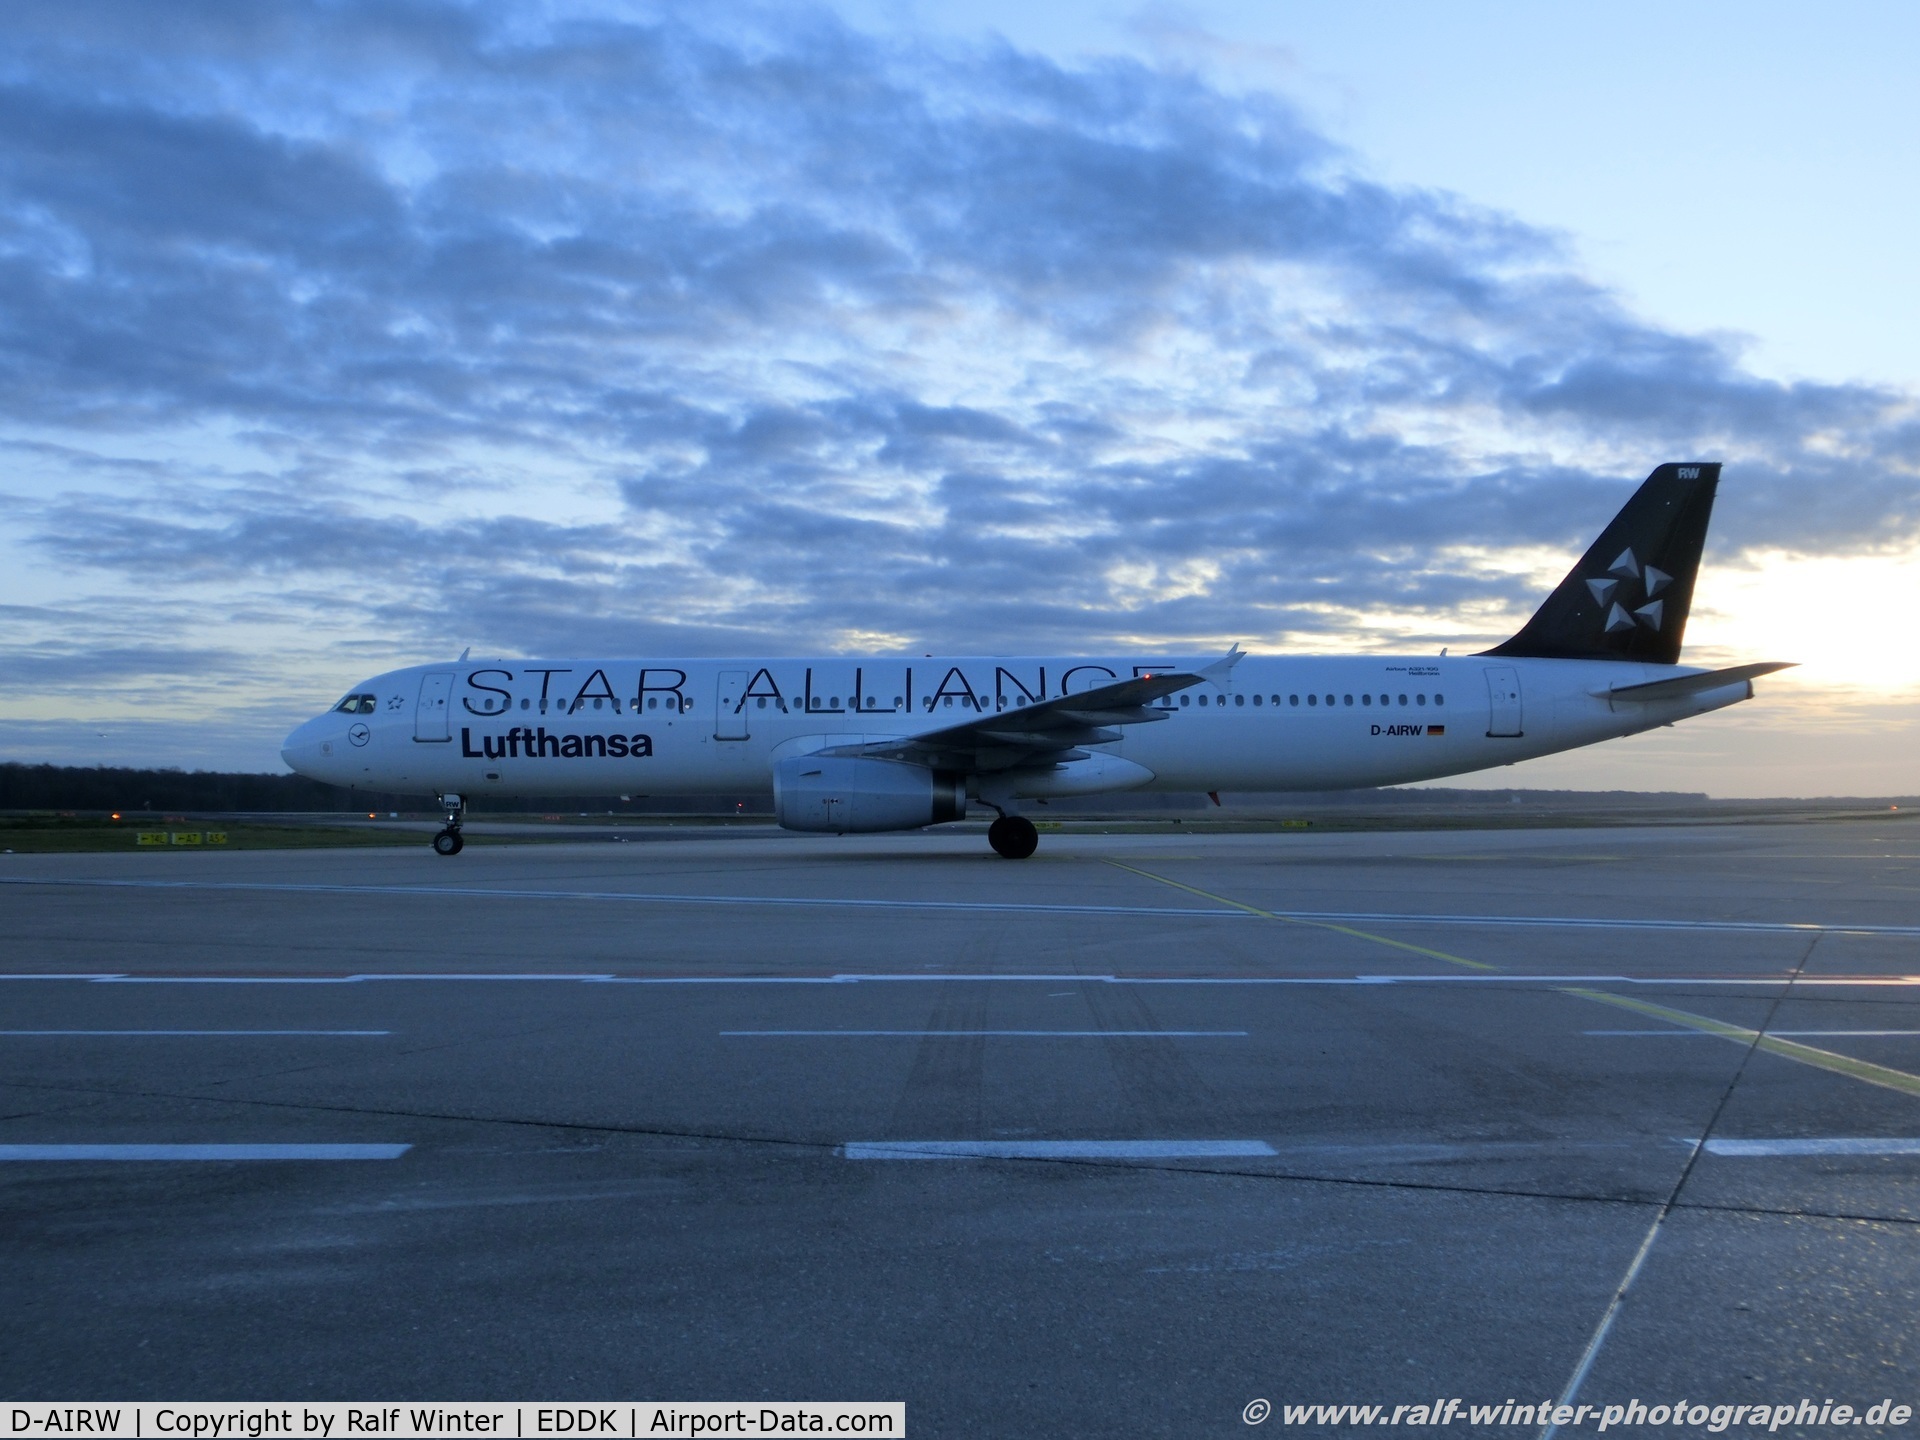 D-AIRW, 1997 Airbus A321-131 C/N 0699, Airbus A321-131 - LH DLH Lufthansa 'Heilbronn' 'Star Alliance' - 699 - D-AIRW - 2016 - CGN